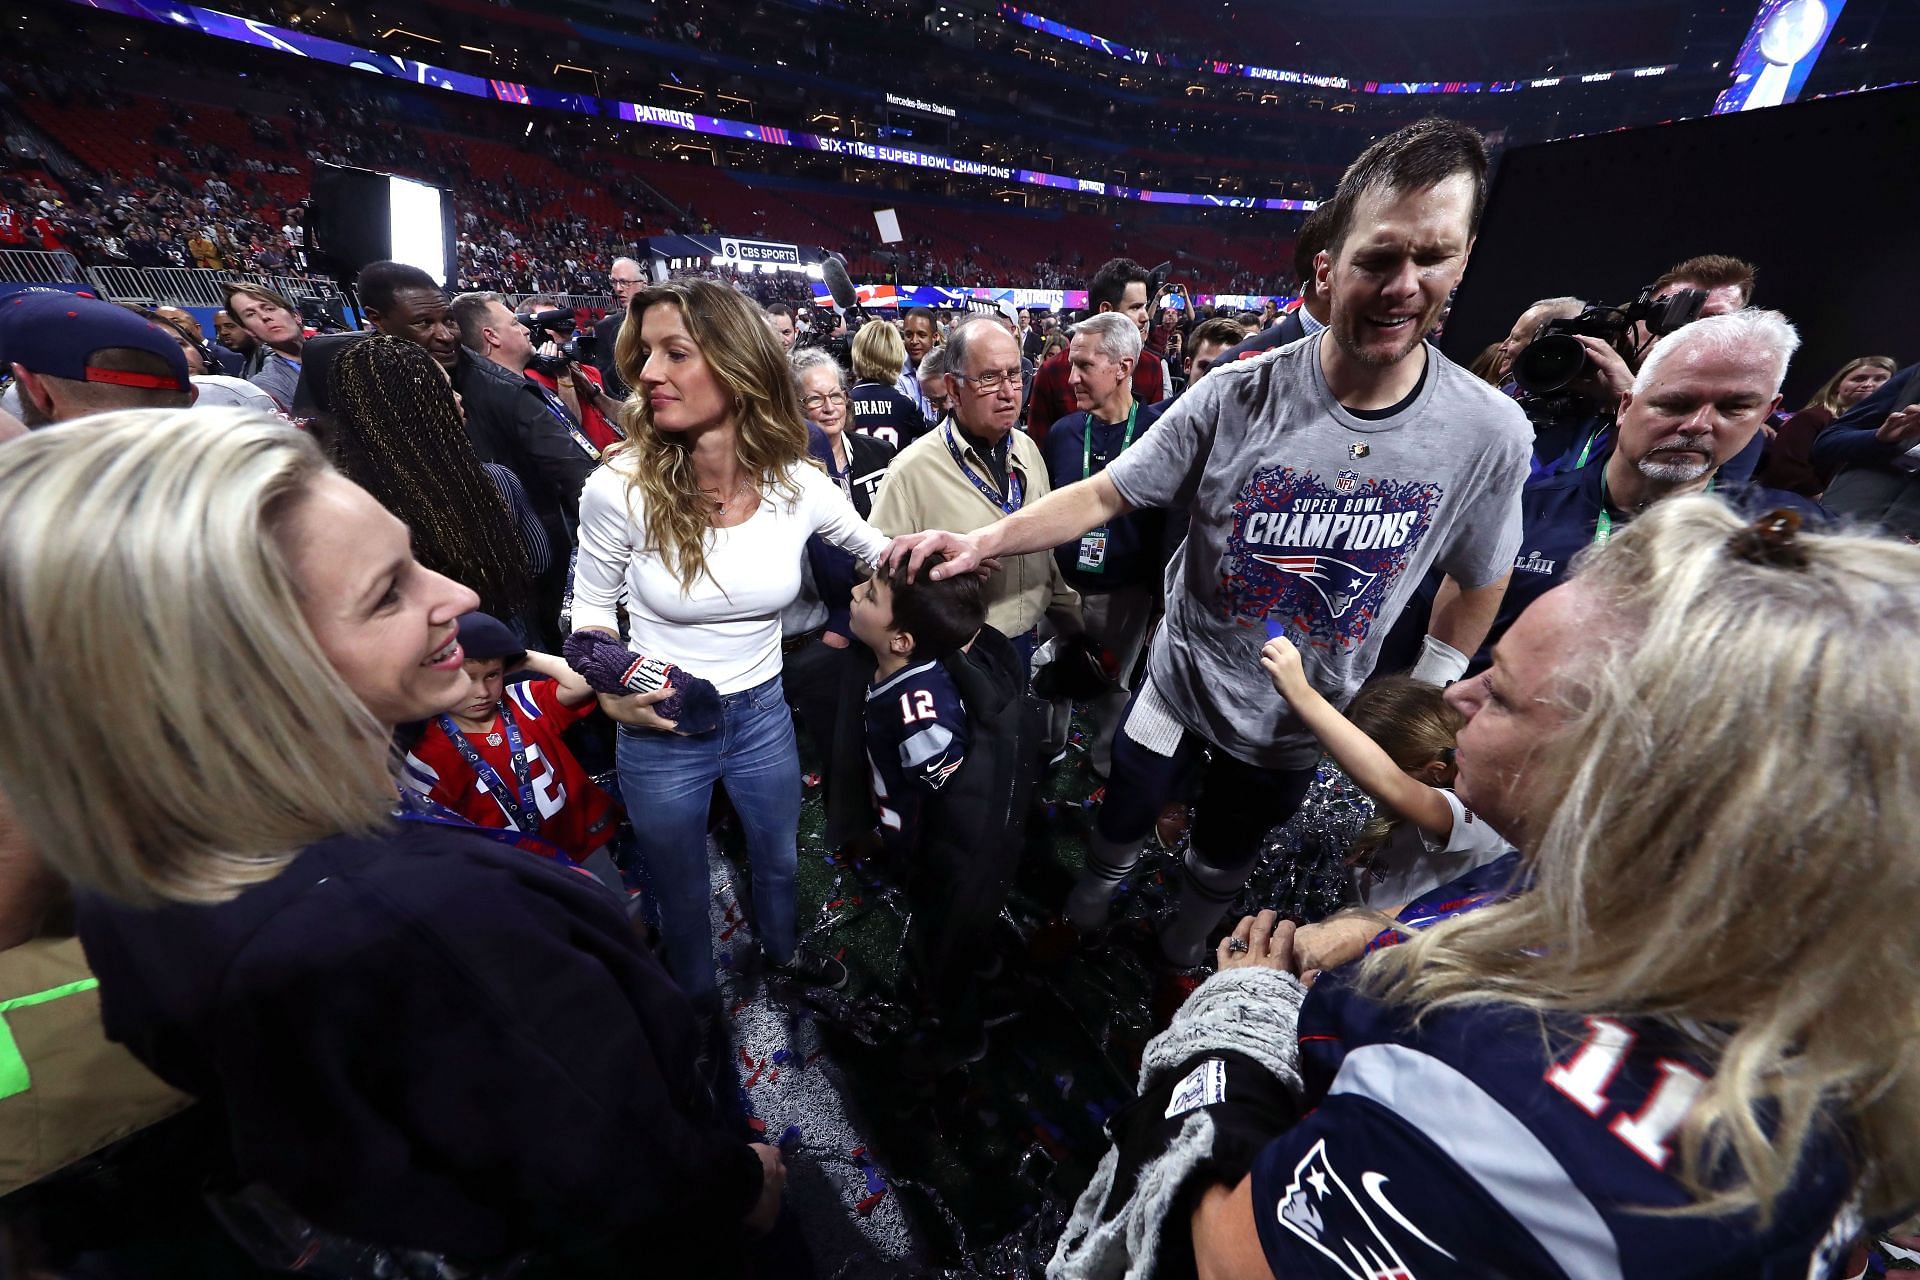 Gisele Bundchen and Tom Brady in happier times